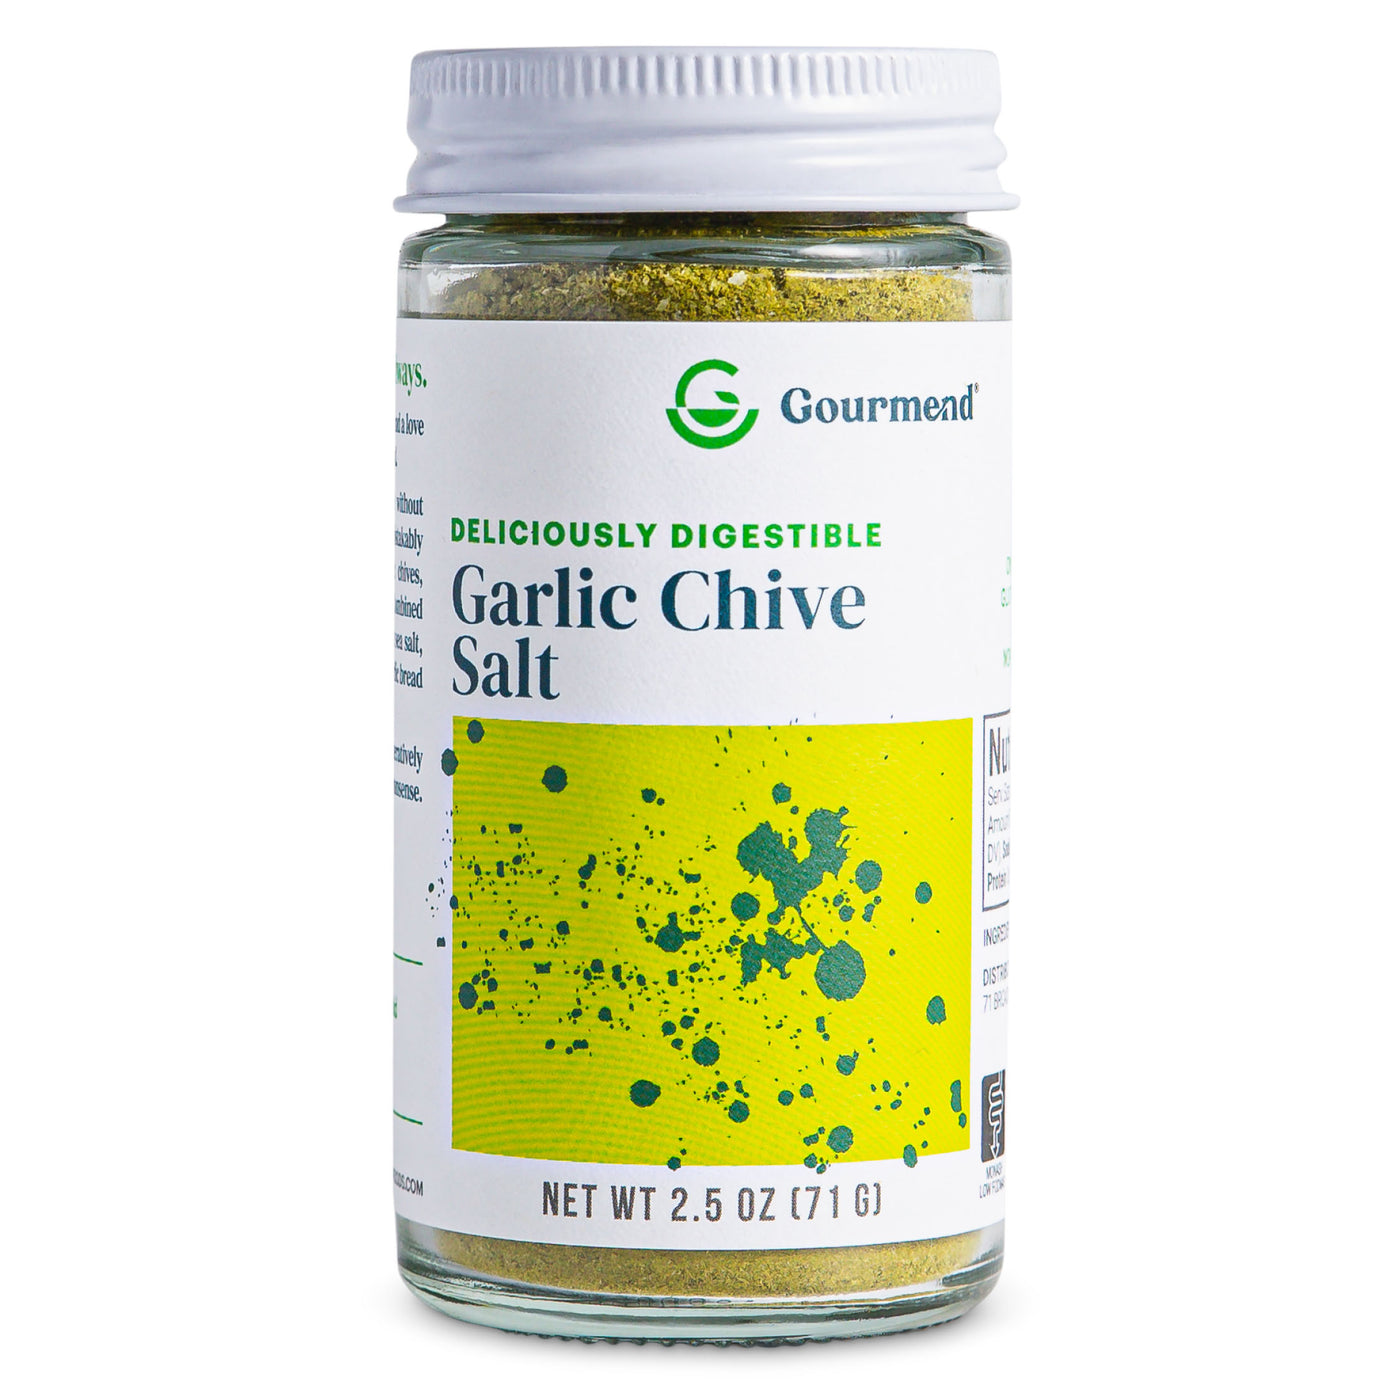 Garlic Chive Salt